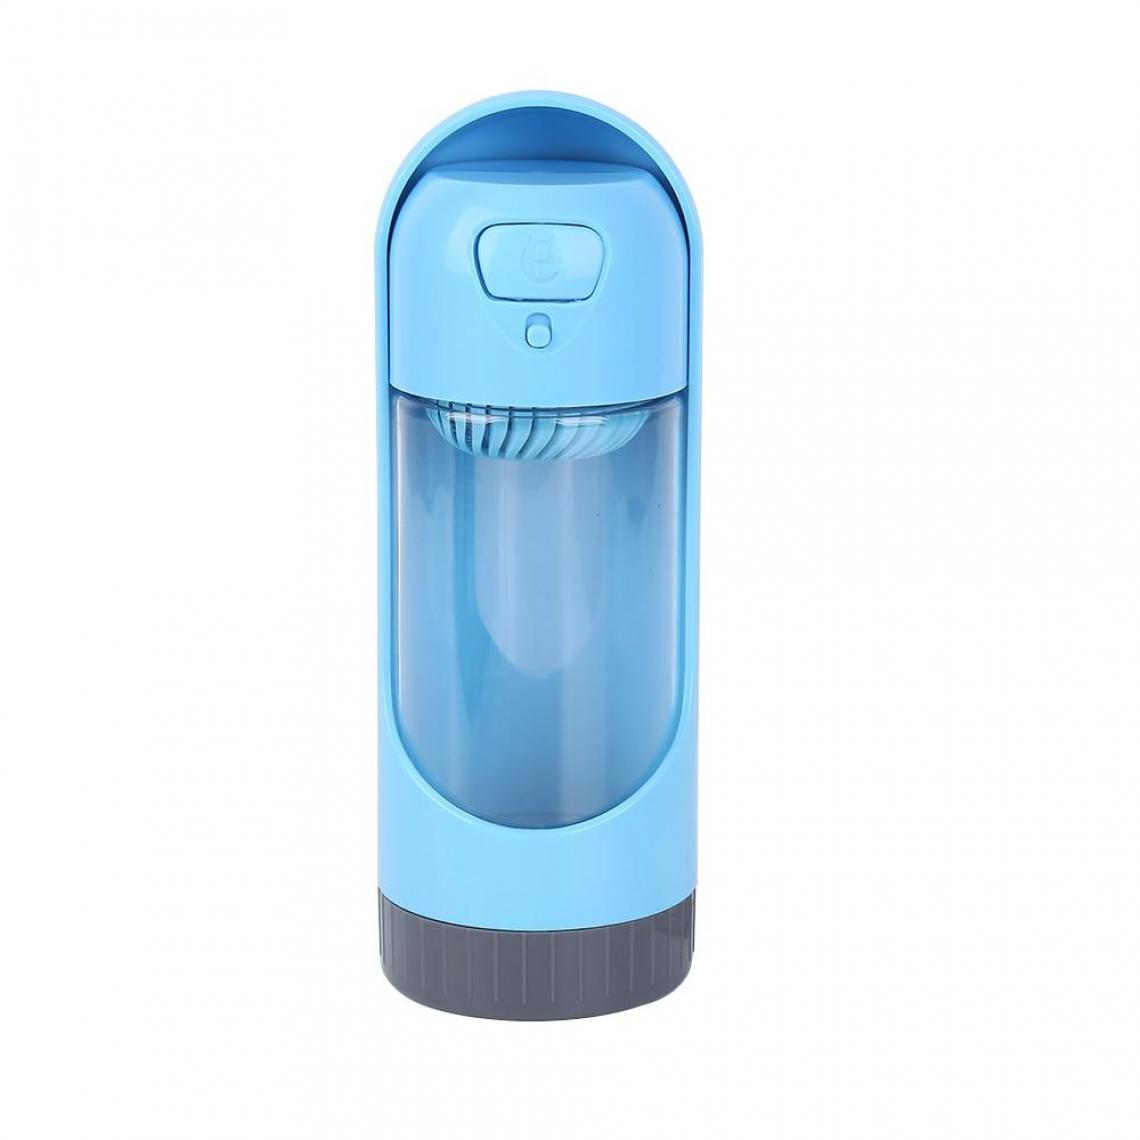 Justgreenbox - Bouteille d'eau portable pour chien, distributeur d'eau d'alimentation, Bleu - Gamelle pour chien